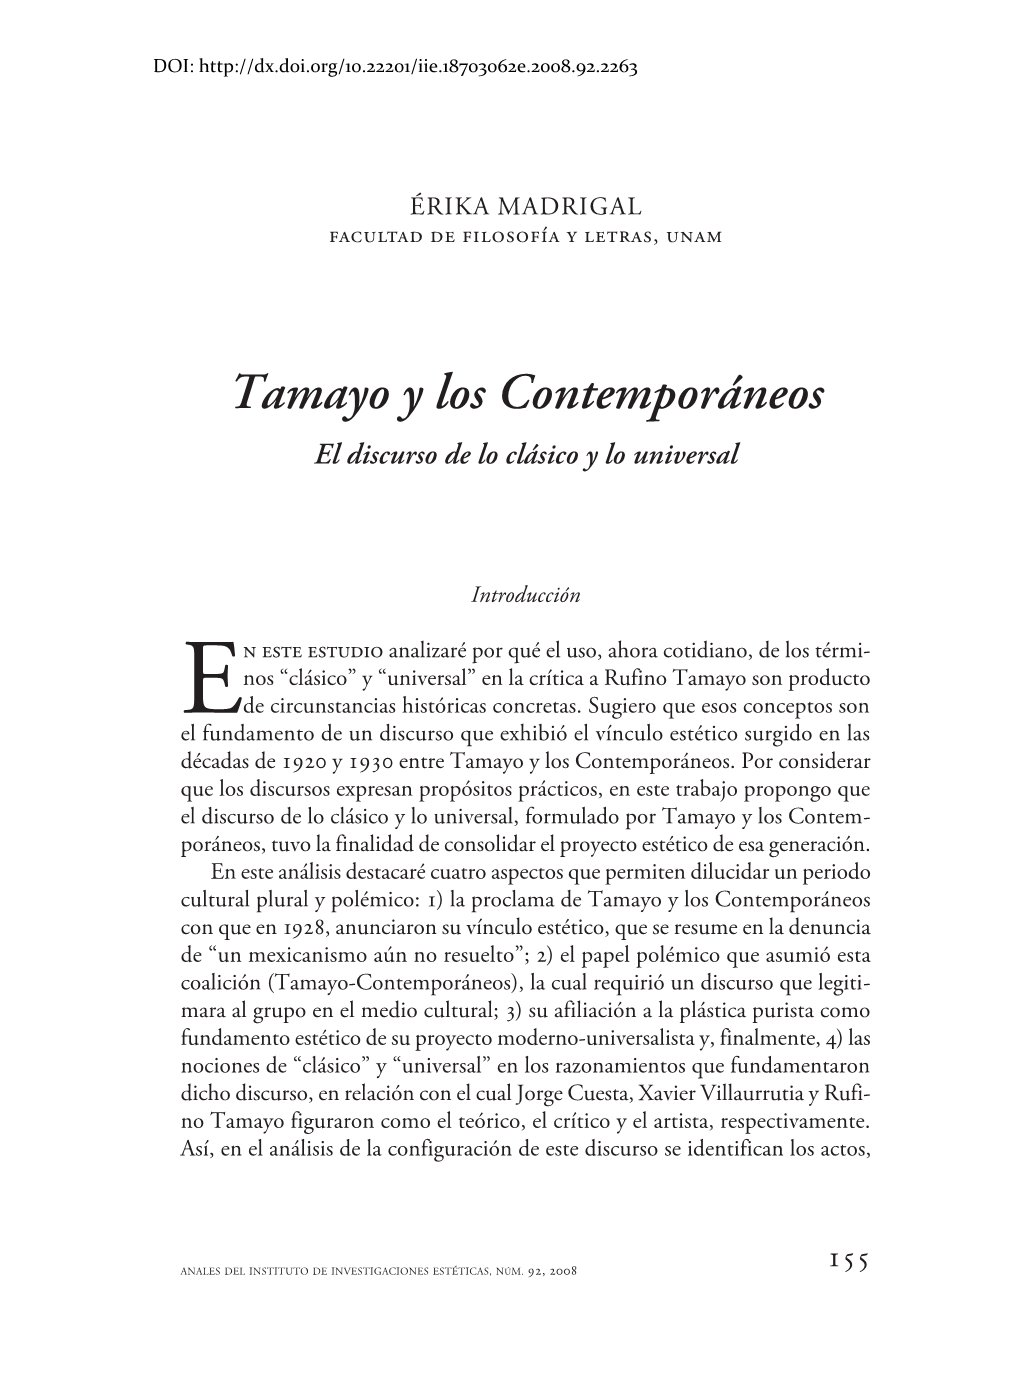 Tamayo Y Los Contemporáneos El Discurso De Lo Clásico Y Lo Universal